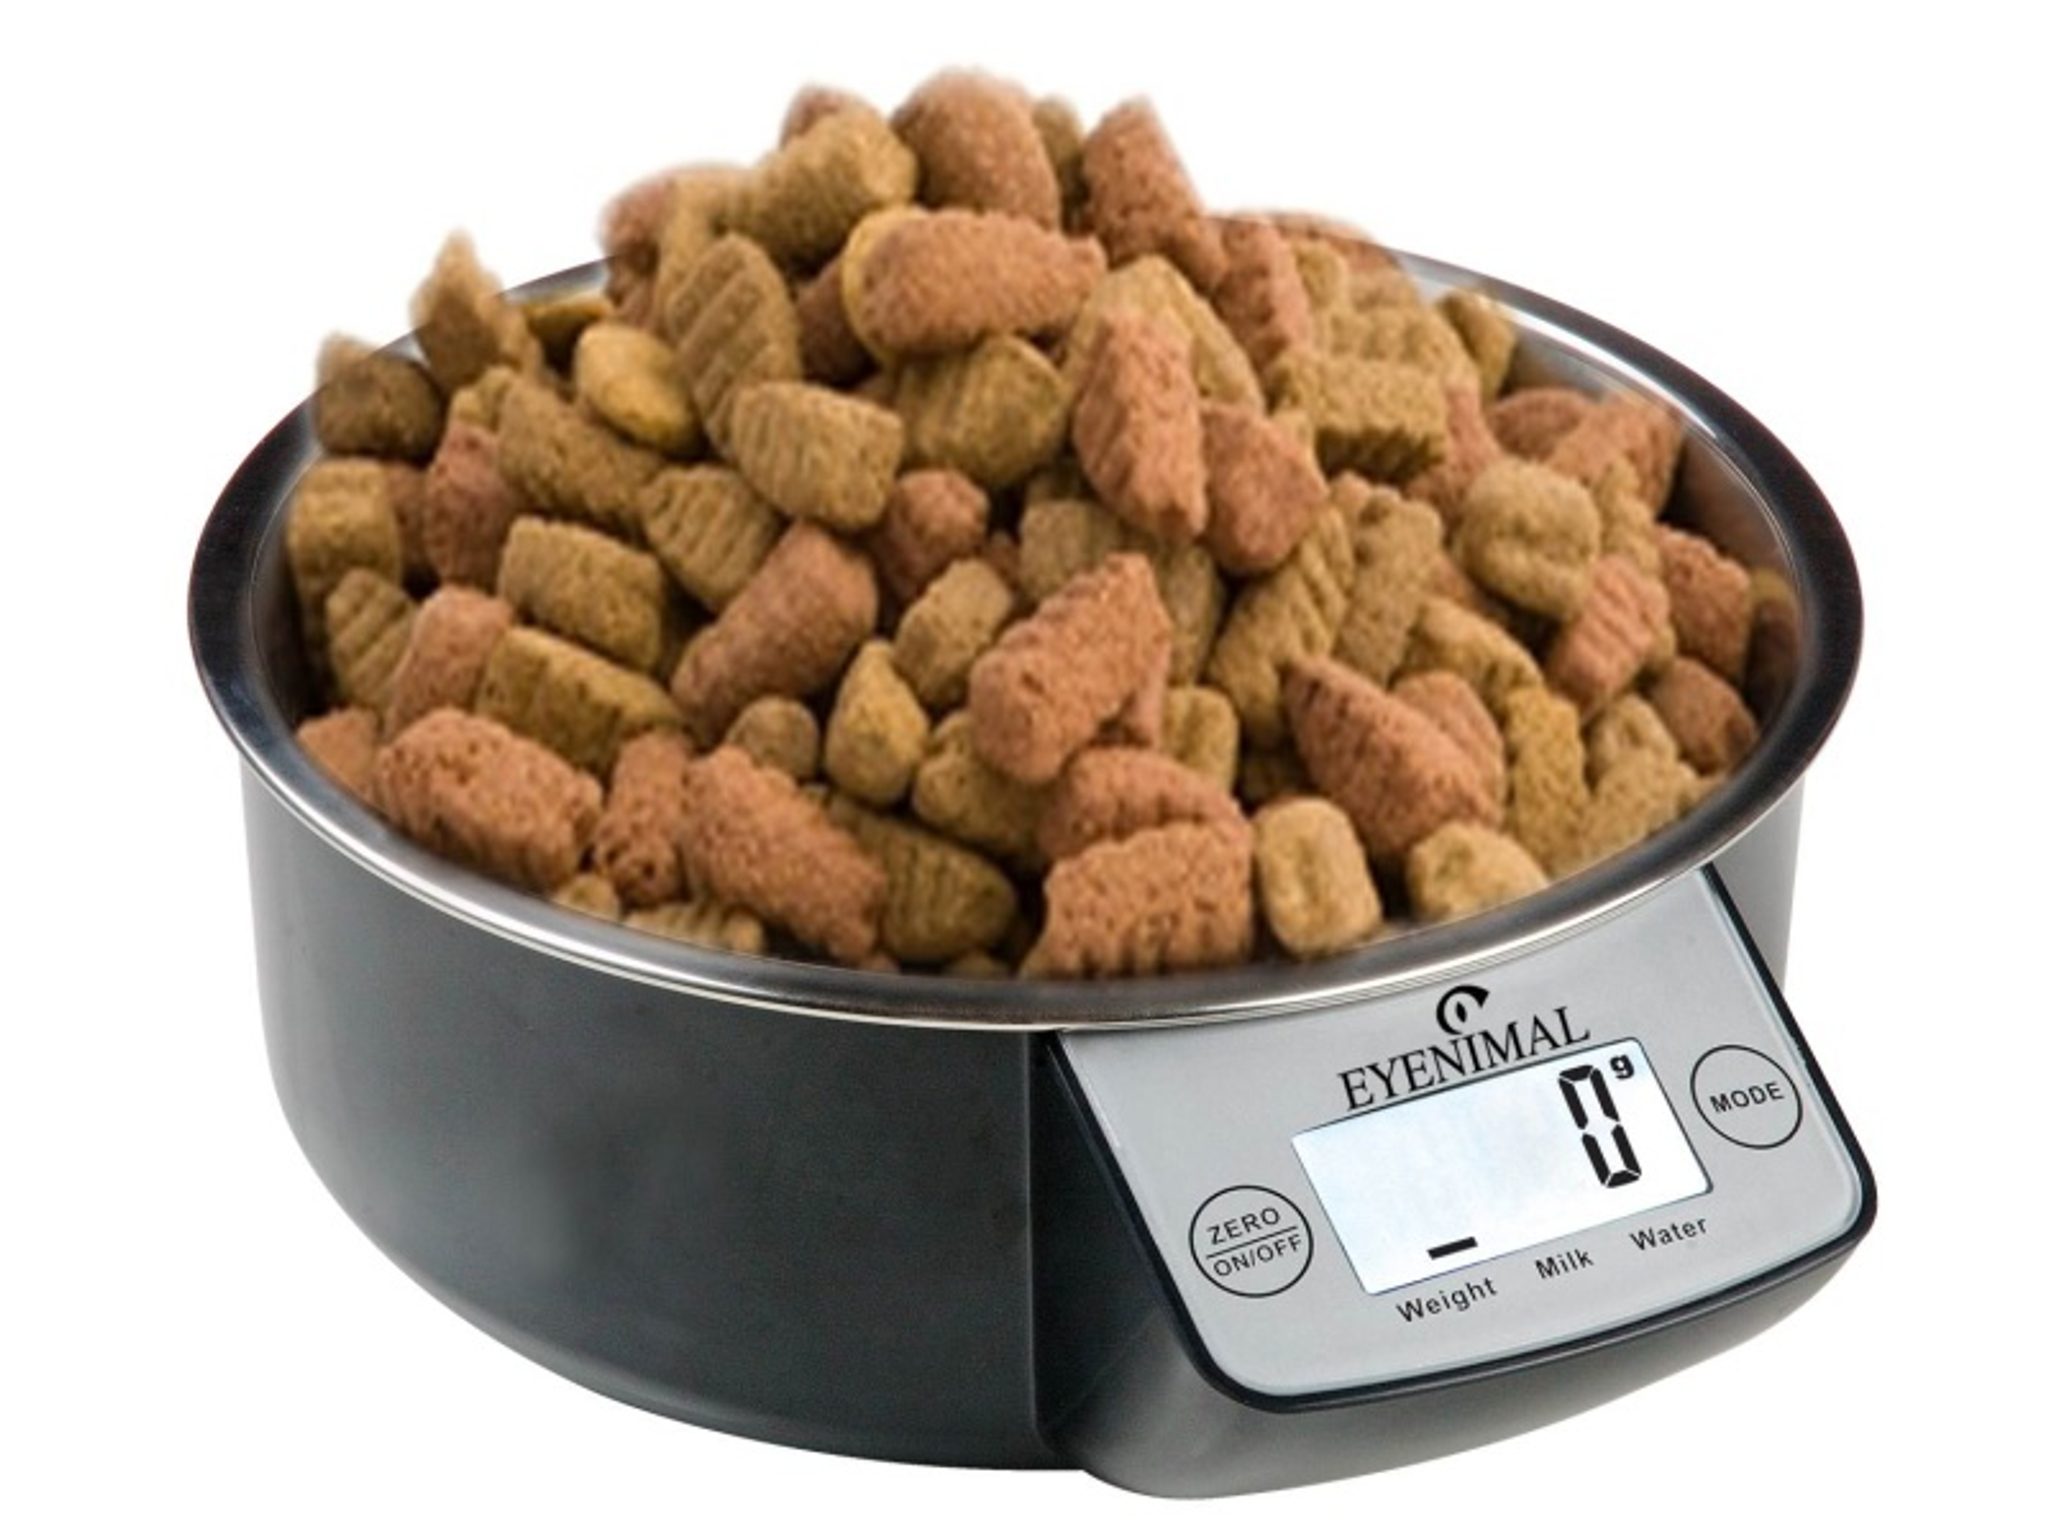 Miska pro psy s váhou EYENIMAL 1 litr - Černá